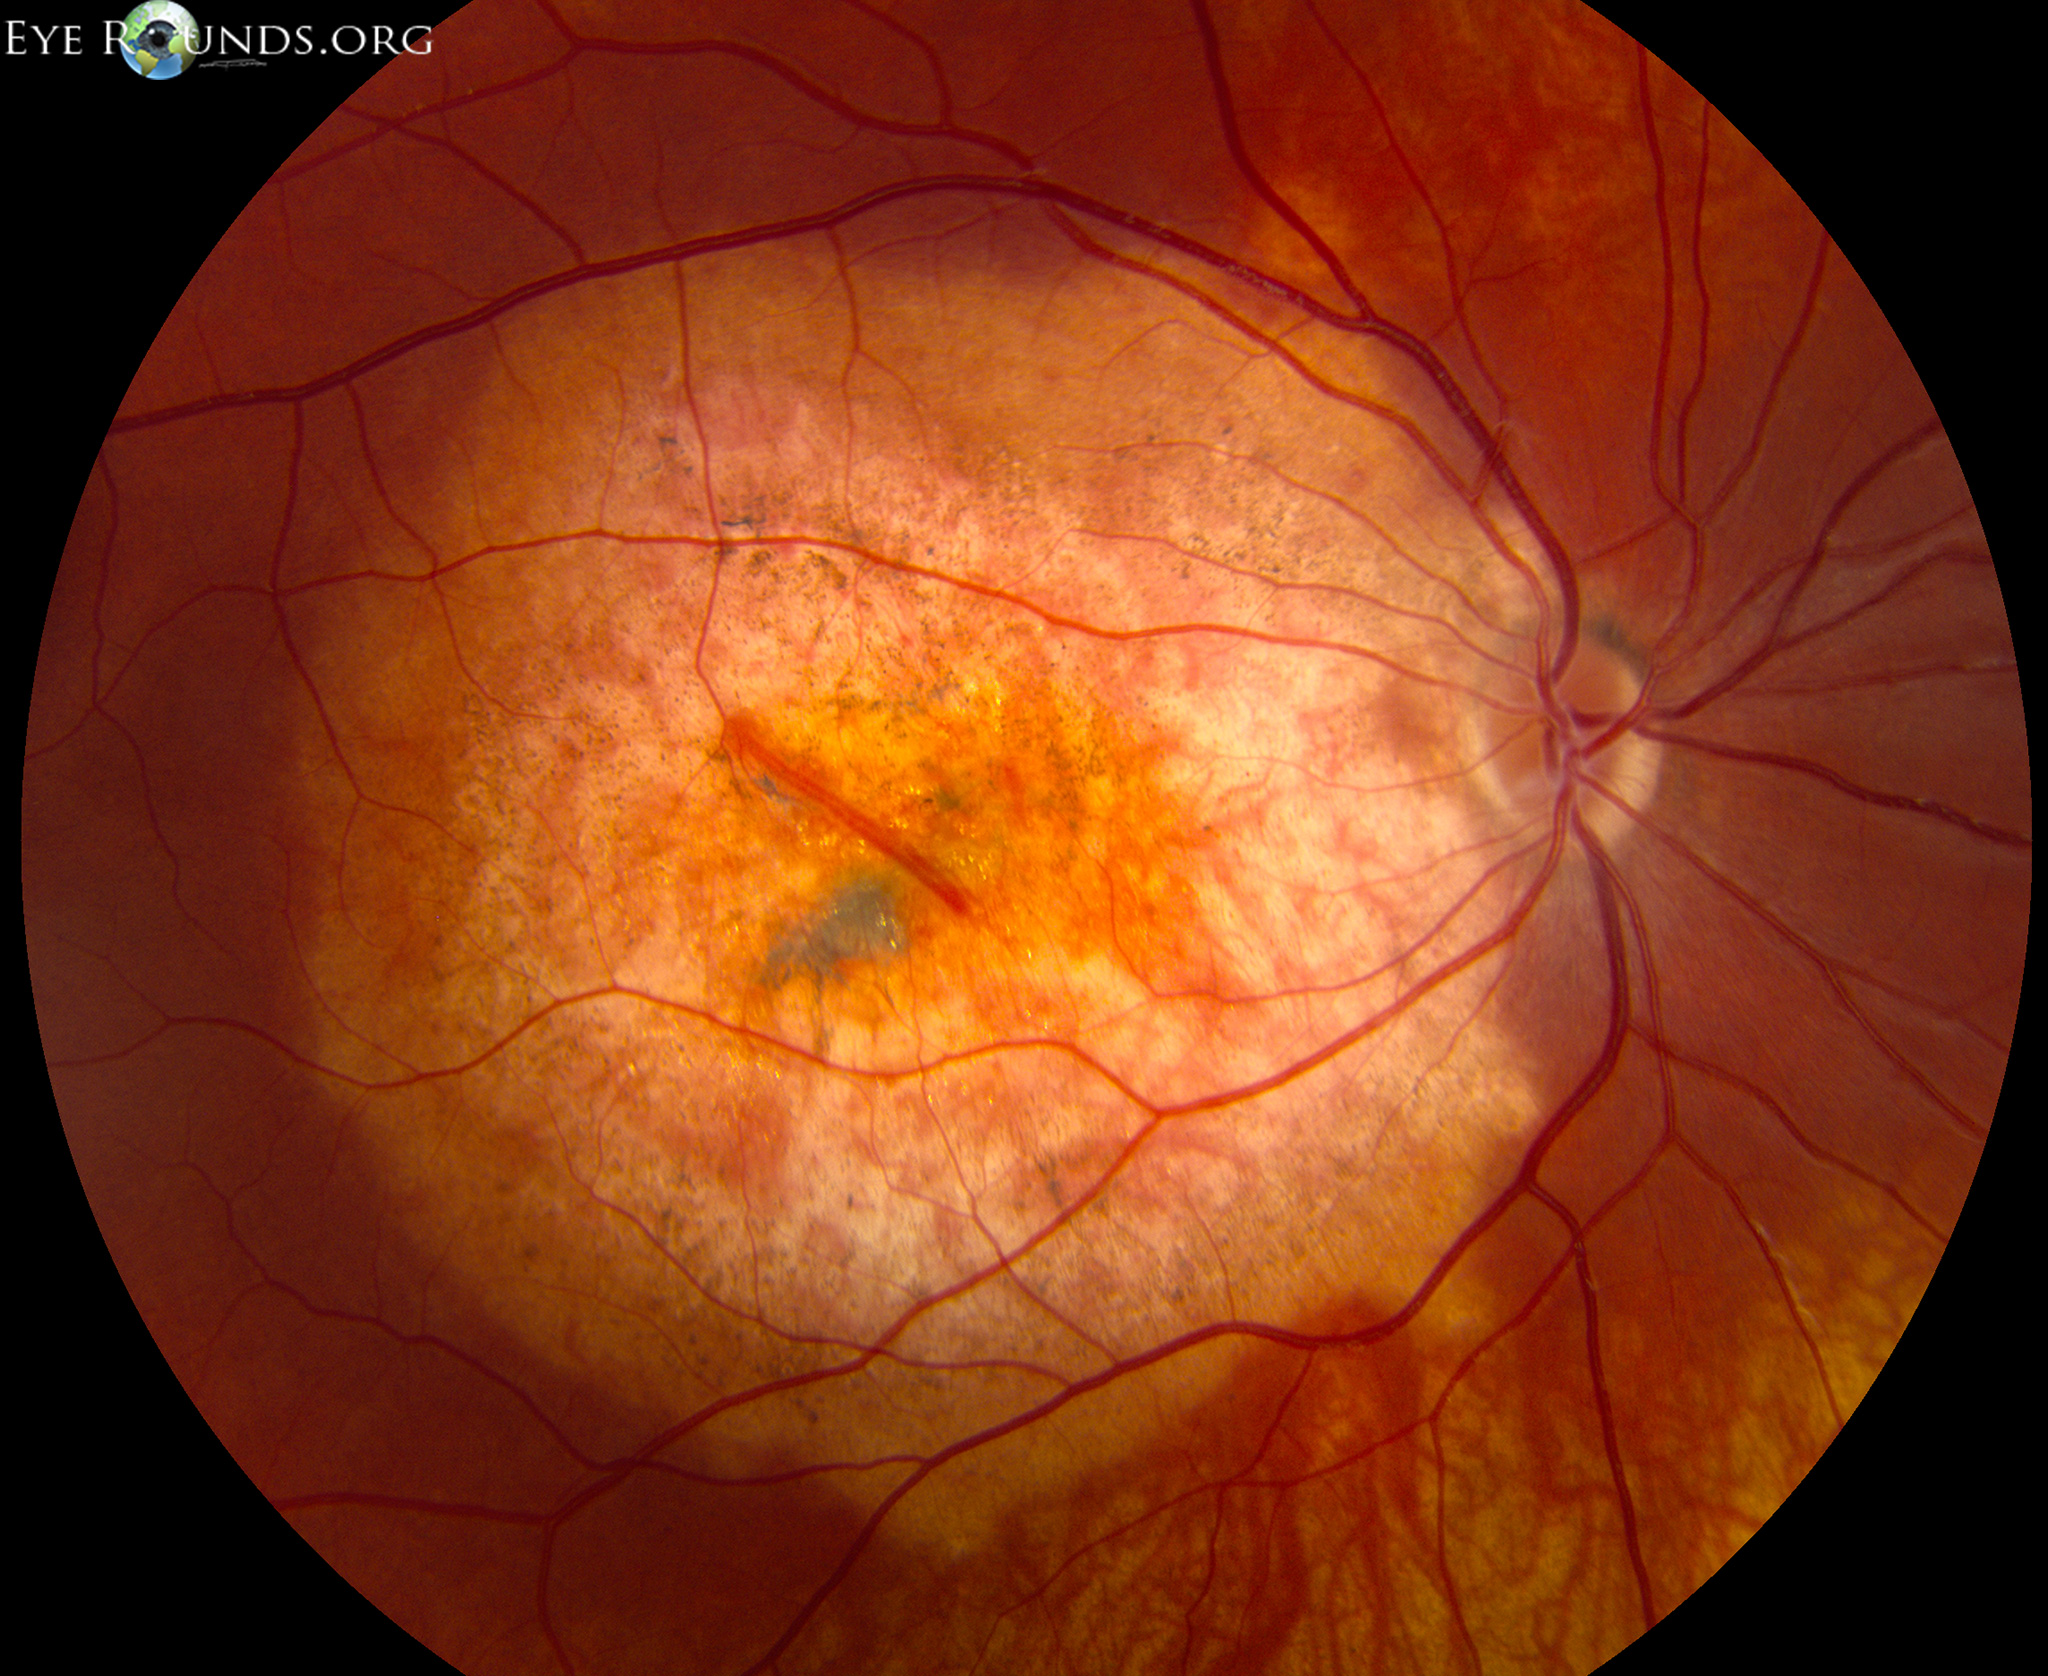 Непролиферативная диабетическая ретинопатия